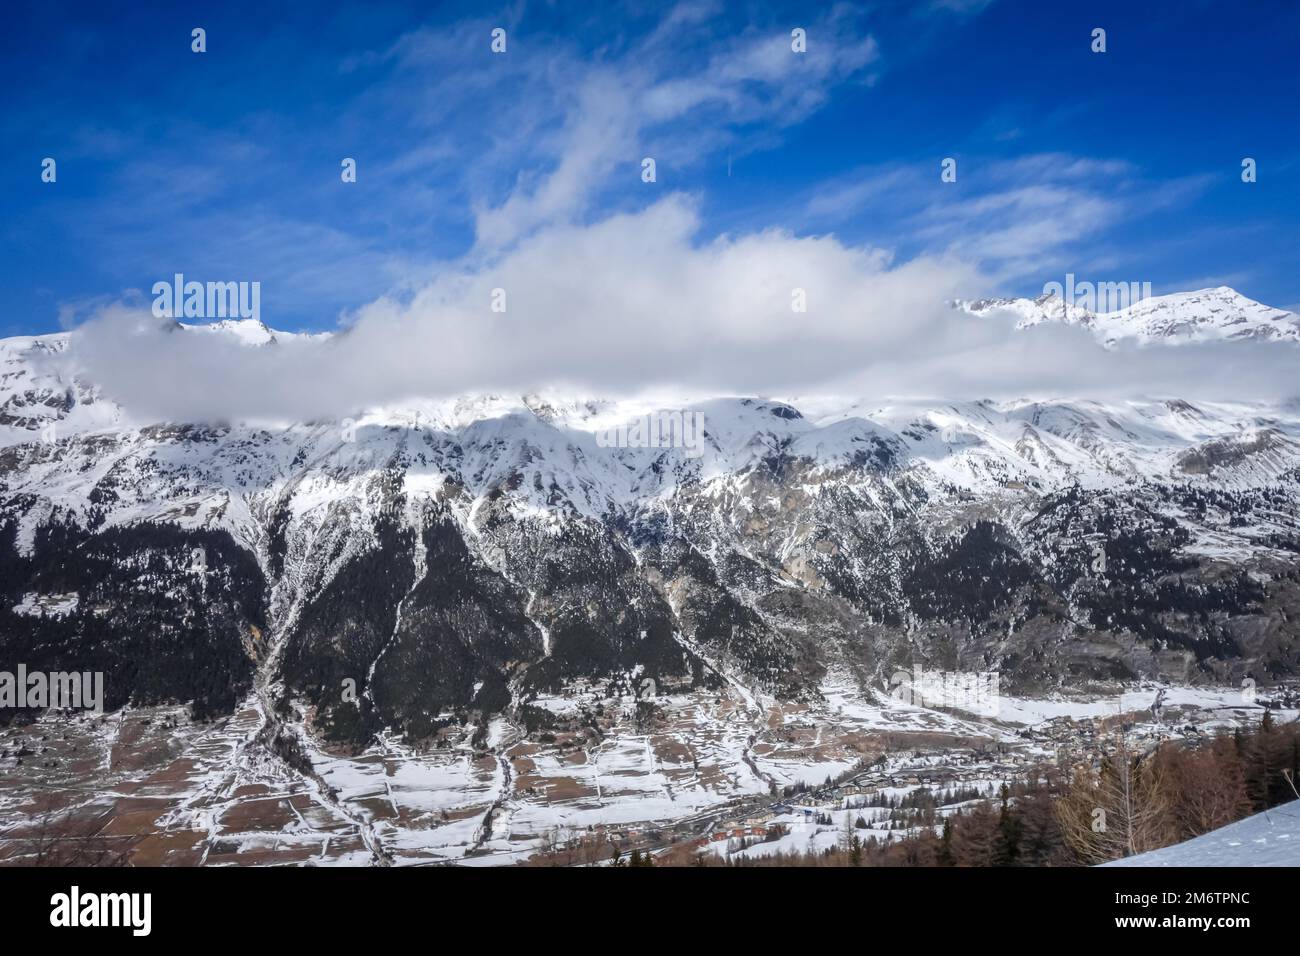 Ski slopes of Val cenis in the french alps Stock Photo